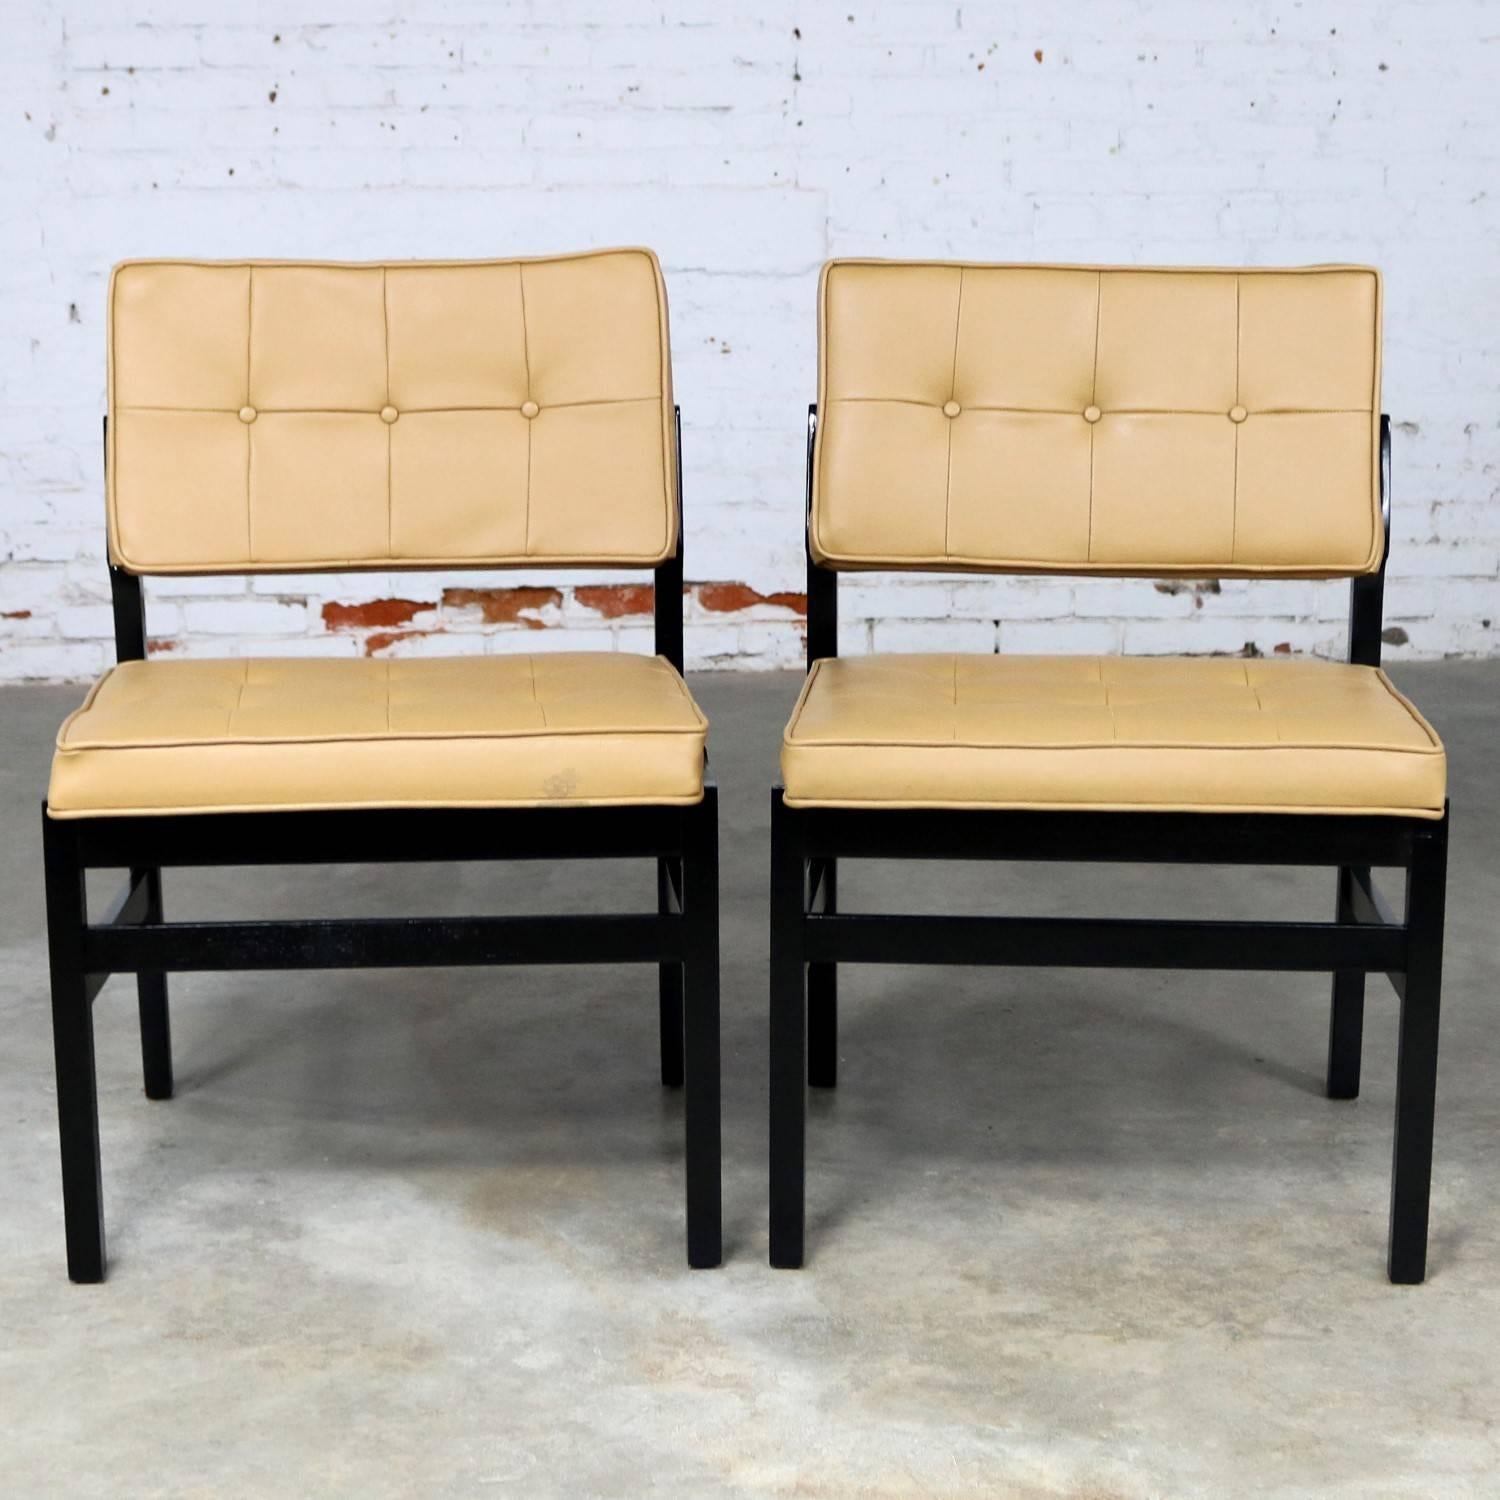 Belle paire de chaises d'appoint Hibriten Chair Co. Leurs grands cadres géométriques en bois ont été noircis à la teinture et ils ont conservé leur revêtement d'origine en similicuir doré verdâtre et leur étiquette Hibriten. Ils sont dans un état